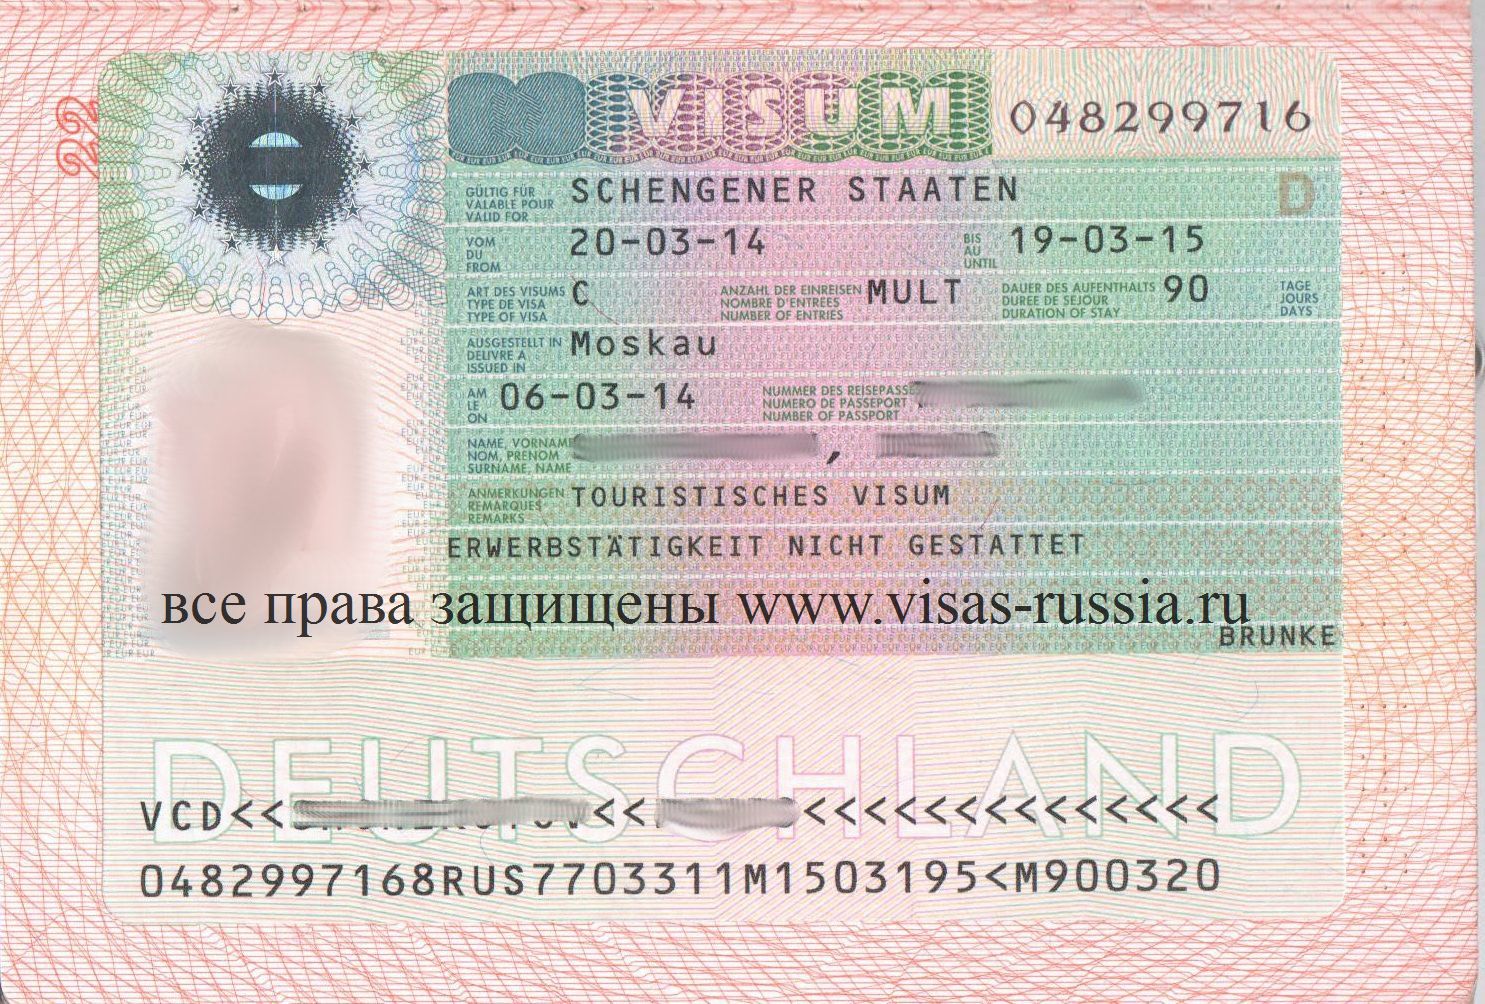 Как получить визу для работы в странах шенгена в 2021 году — все о визах и эмиграции